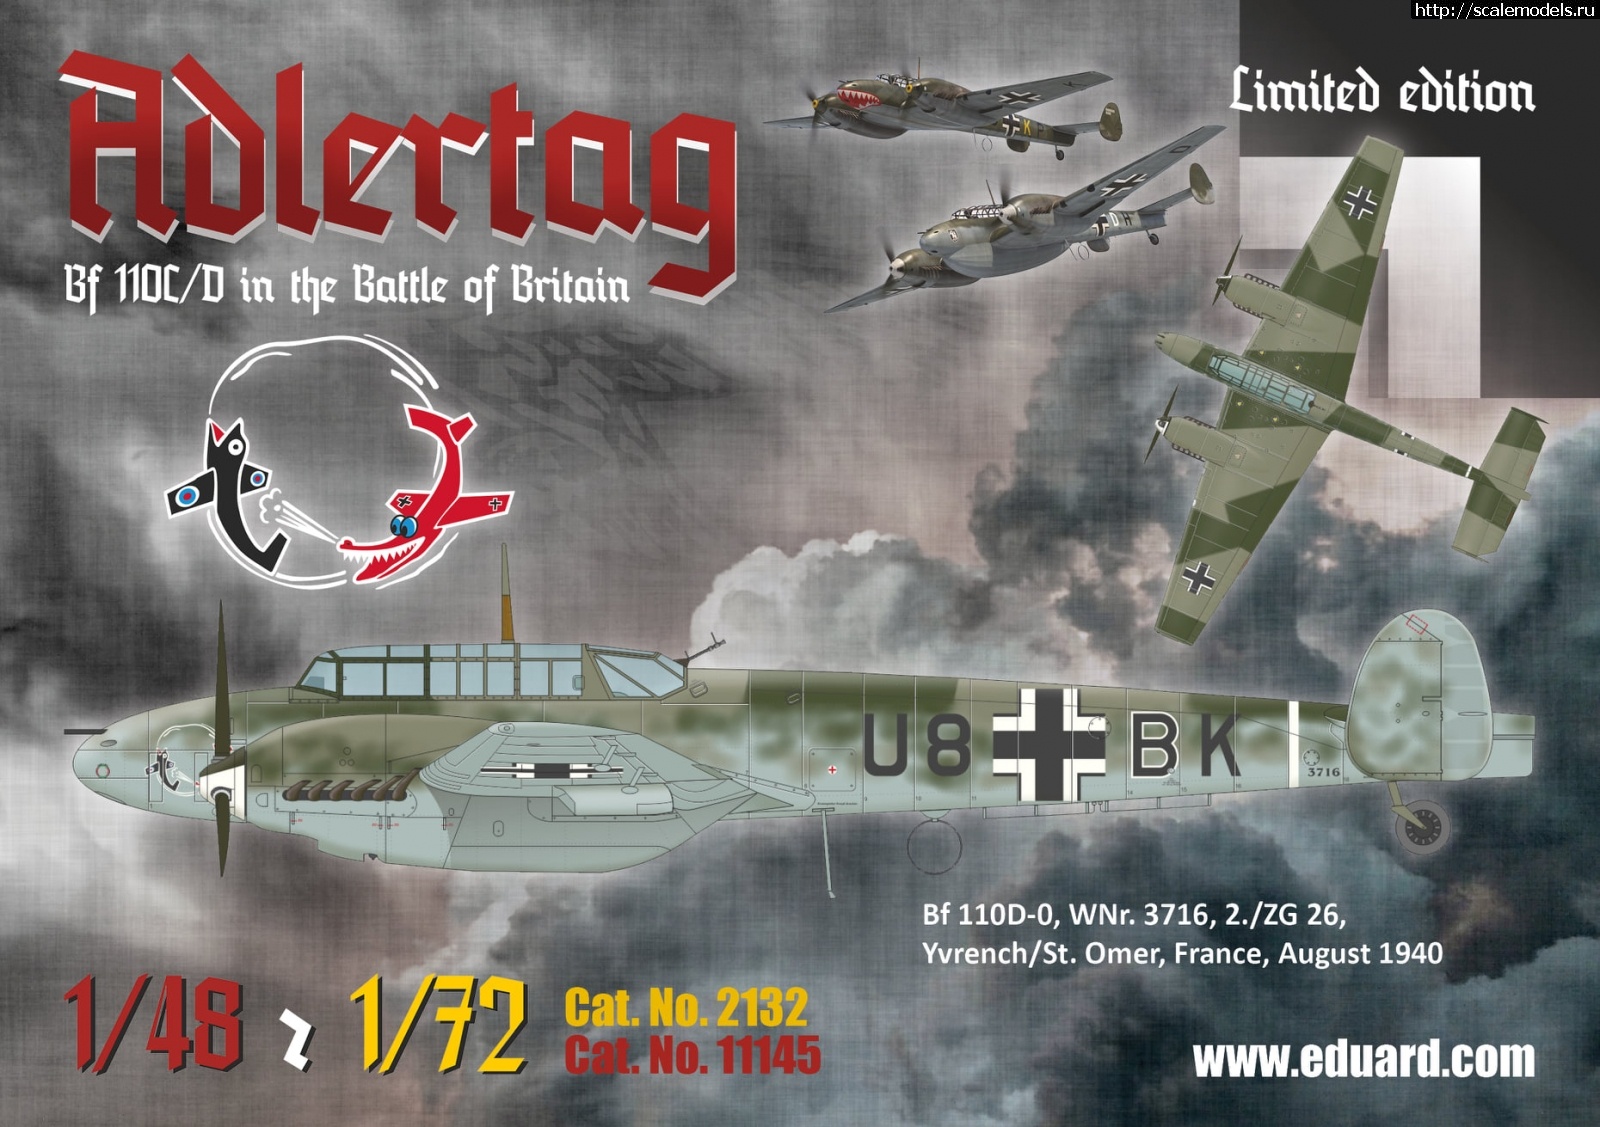 1604573790_123813378_3987467511268166_4205866216126882525_o.jpg :  Eduard 1/48  1/72 Messerschmitt Bf 110C/D Adlertag  